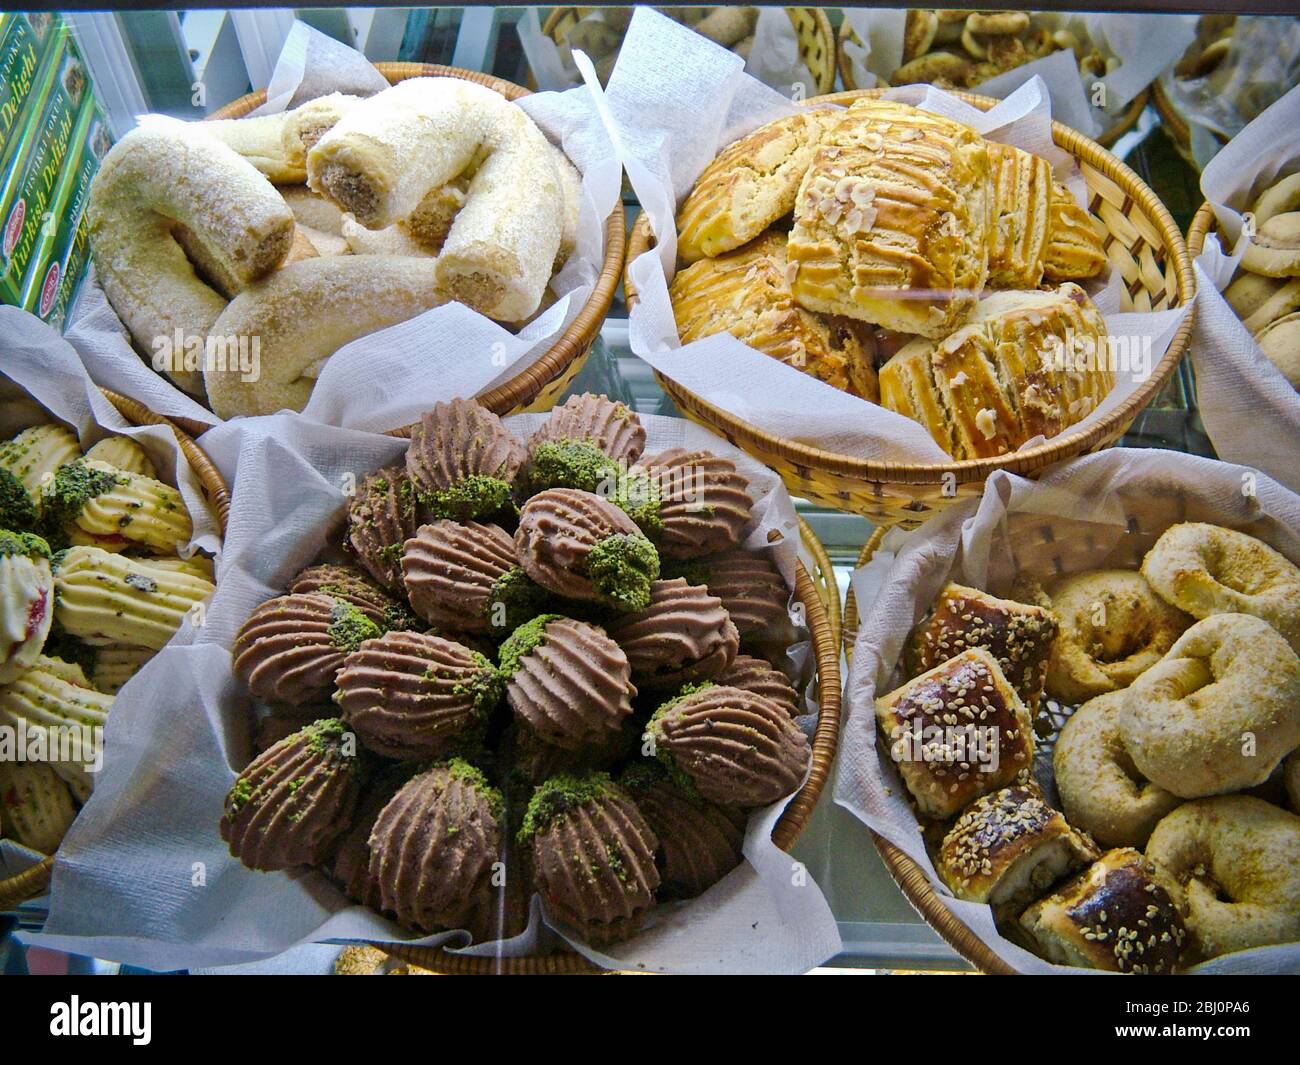 Auswahl an Kuchen, Plätzchen und Keksen in Vitrine der Patisserie Cafe in Resort Stadt Dalayan, anatolia, Türkei - Stockfoto